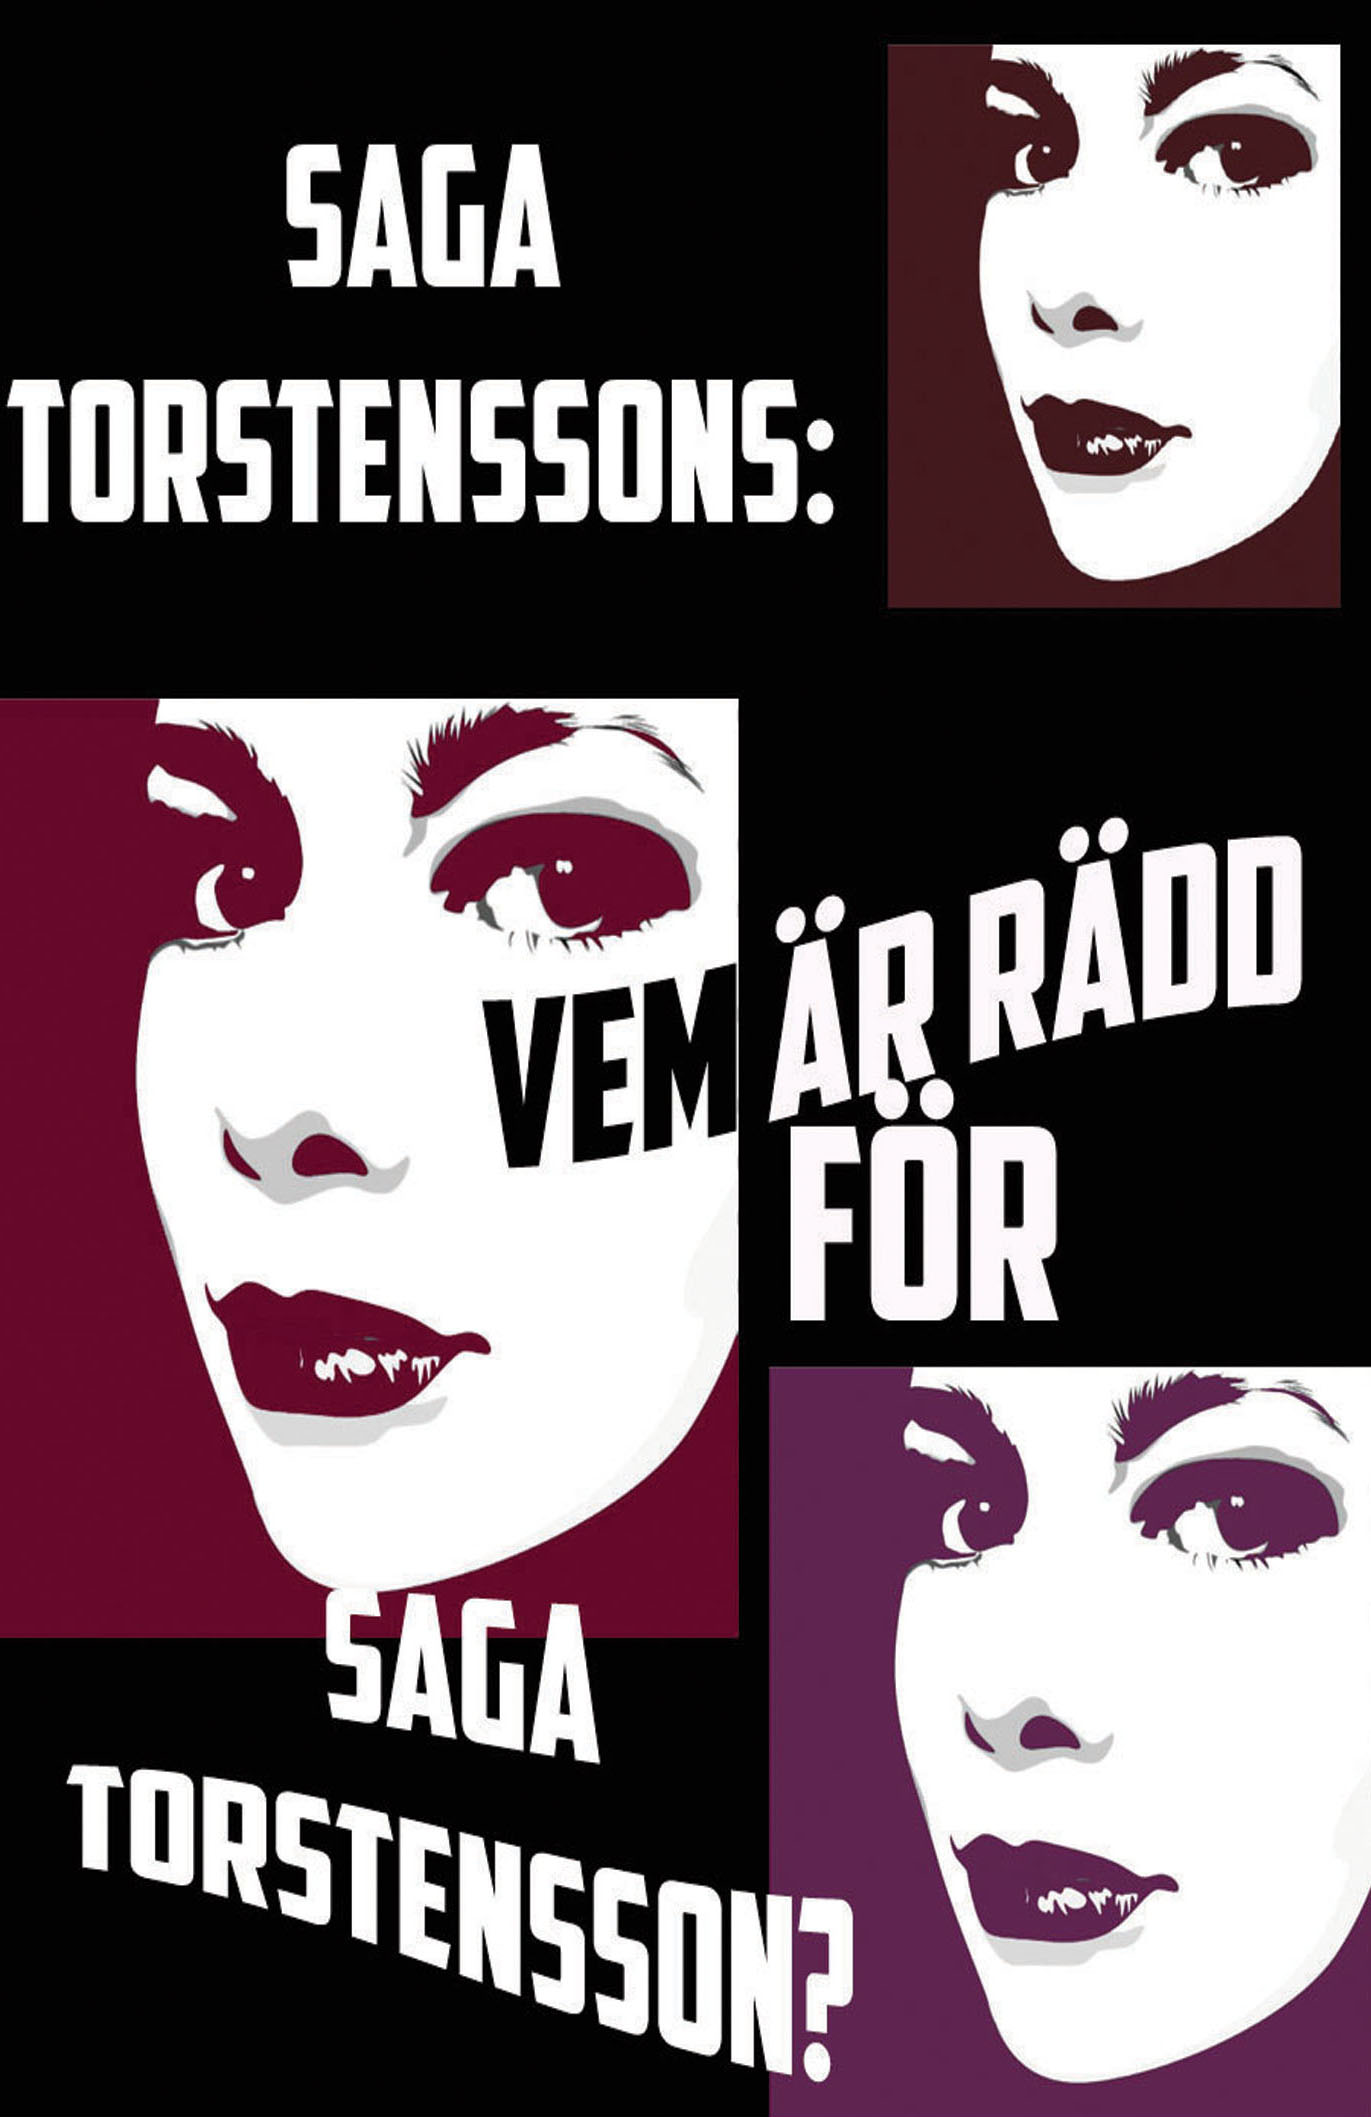 Vem är rädd för <b>Saga Torstensson</b>? Häftad - 14446972-origpic-40f54e